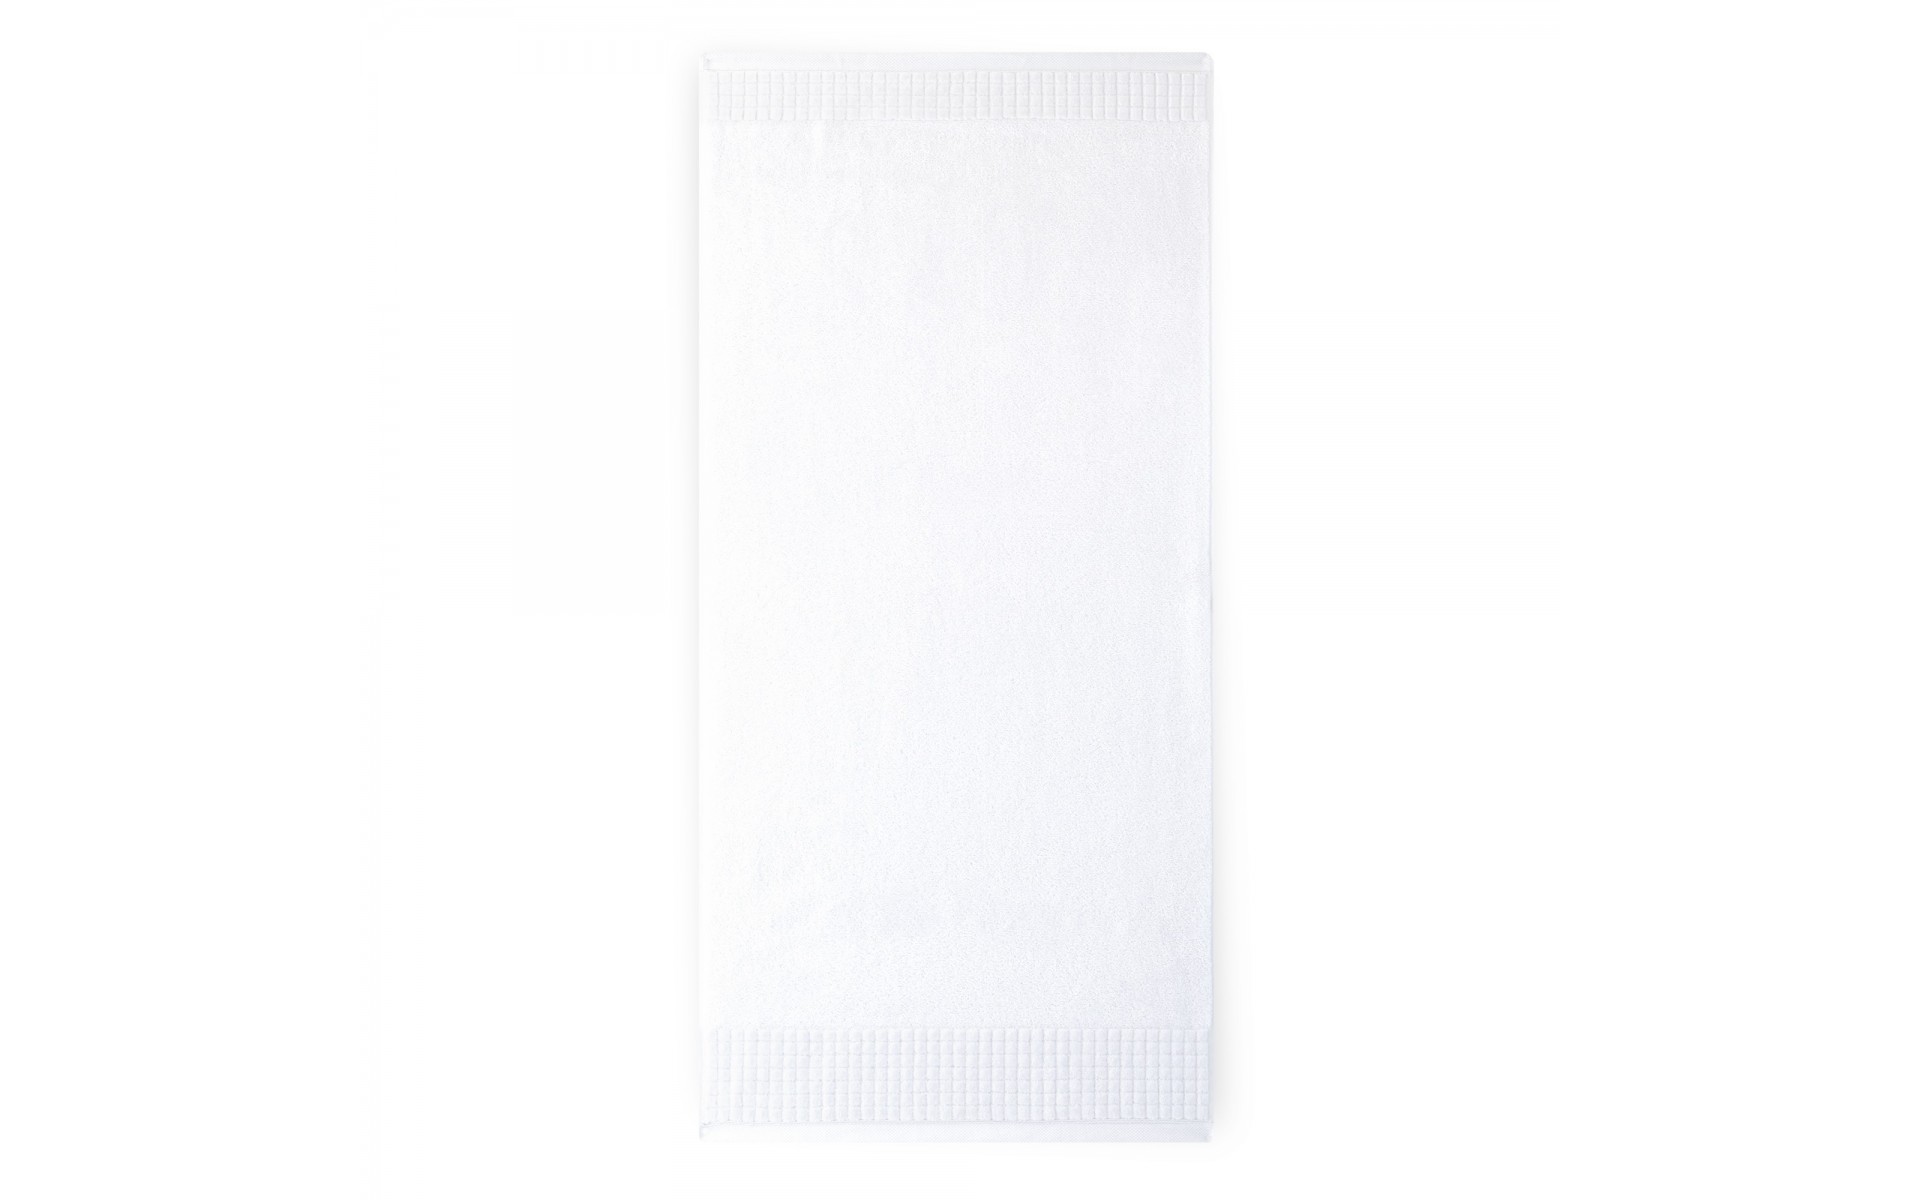 ręcznik PAULO 3 AB biały - 6025